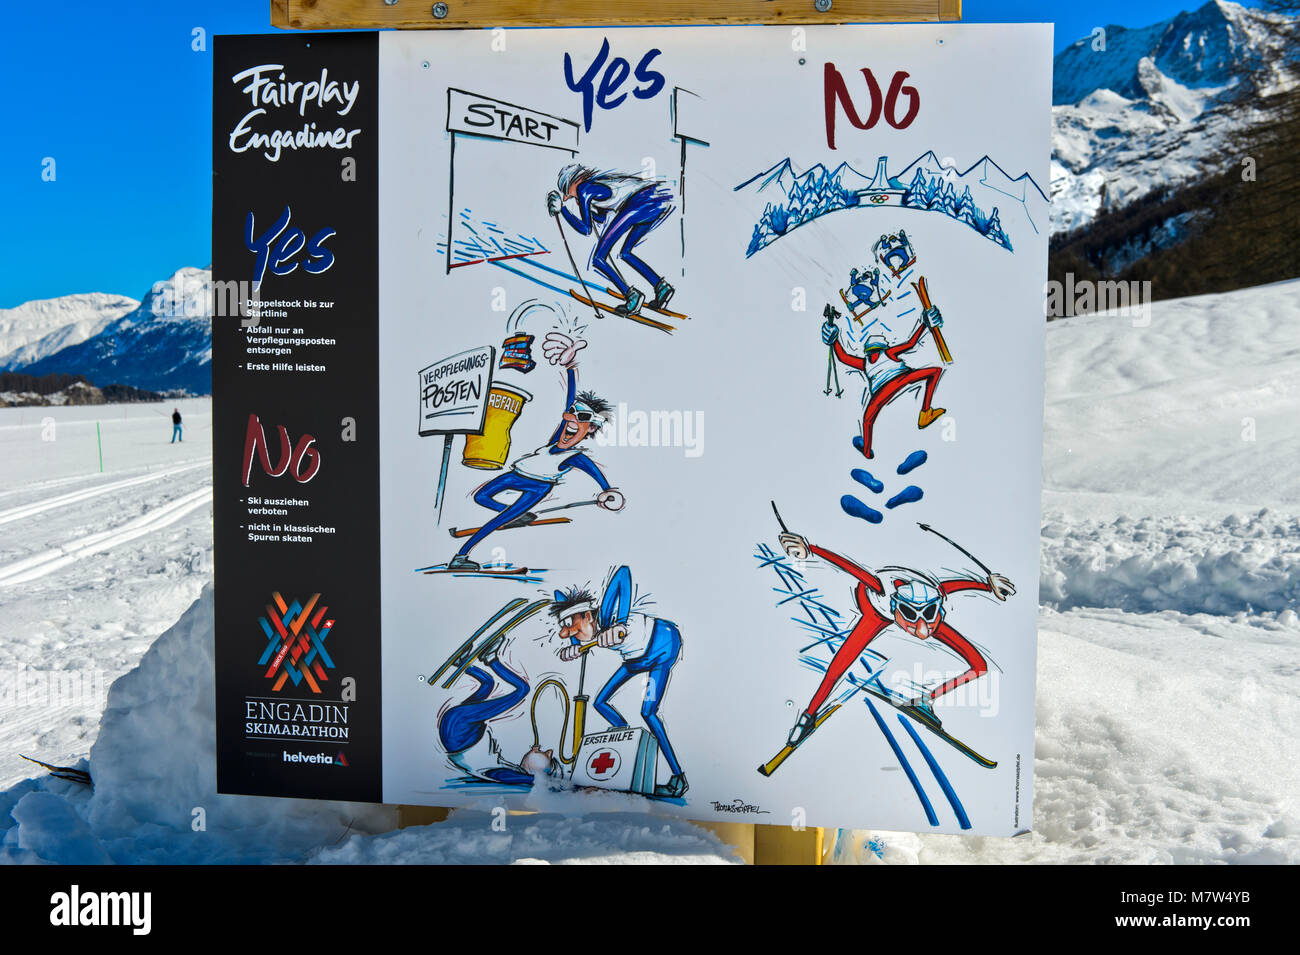 Indicazione di fair play le regole a Engadin Skimarathon, Maloja Engadin, Grigioni, Svizzera Foto Stock